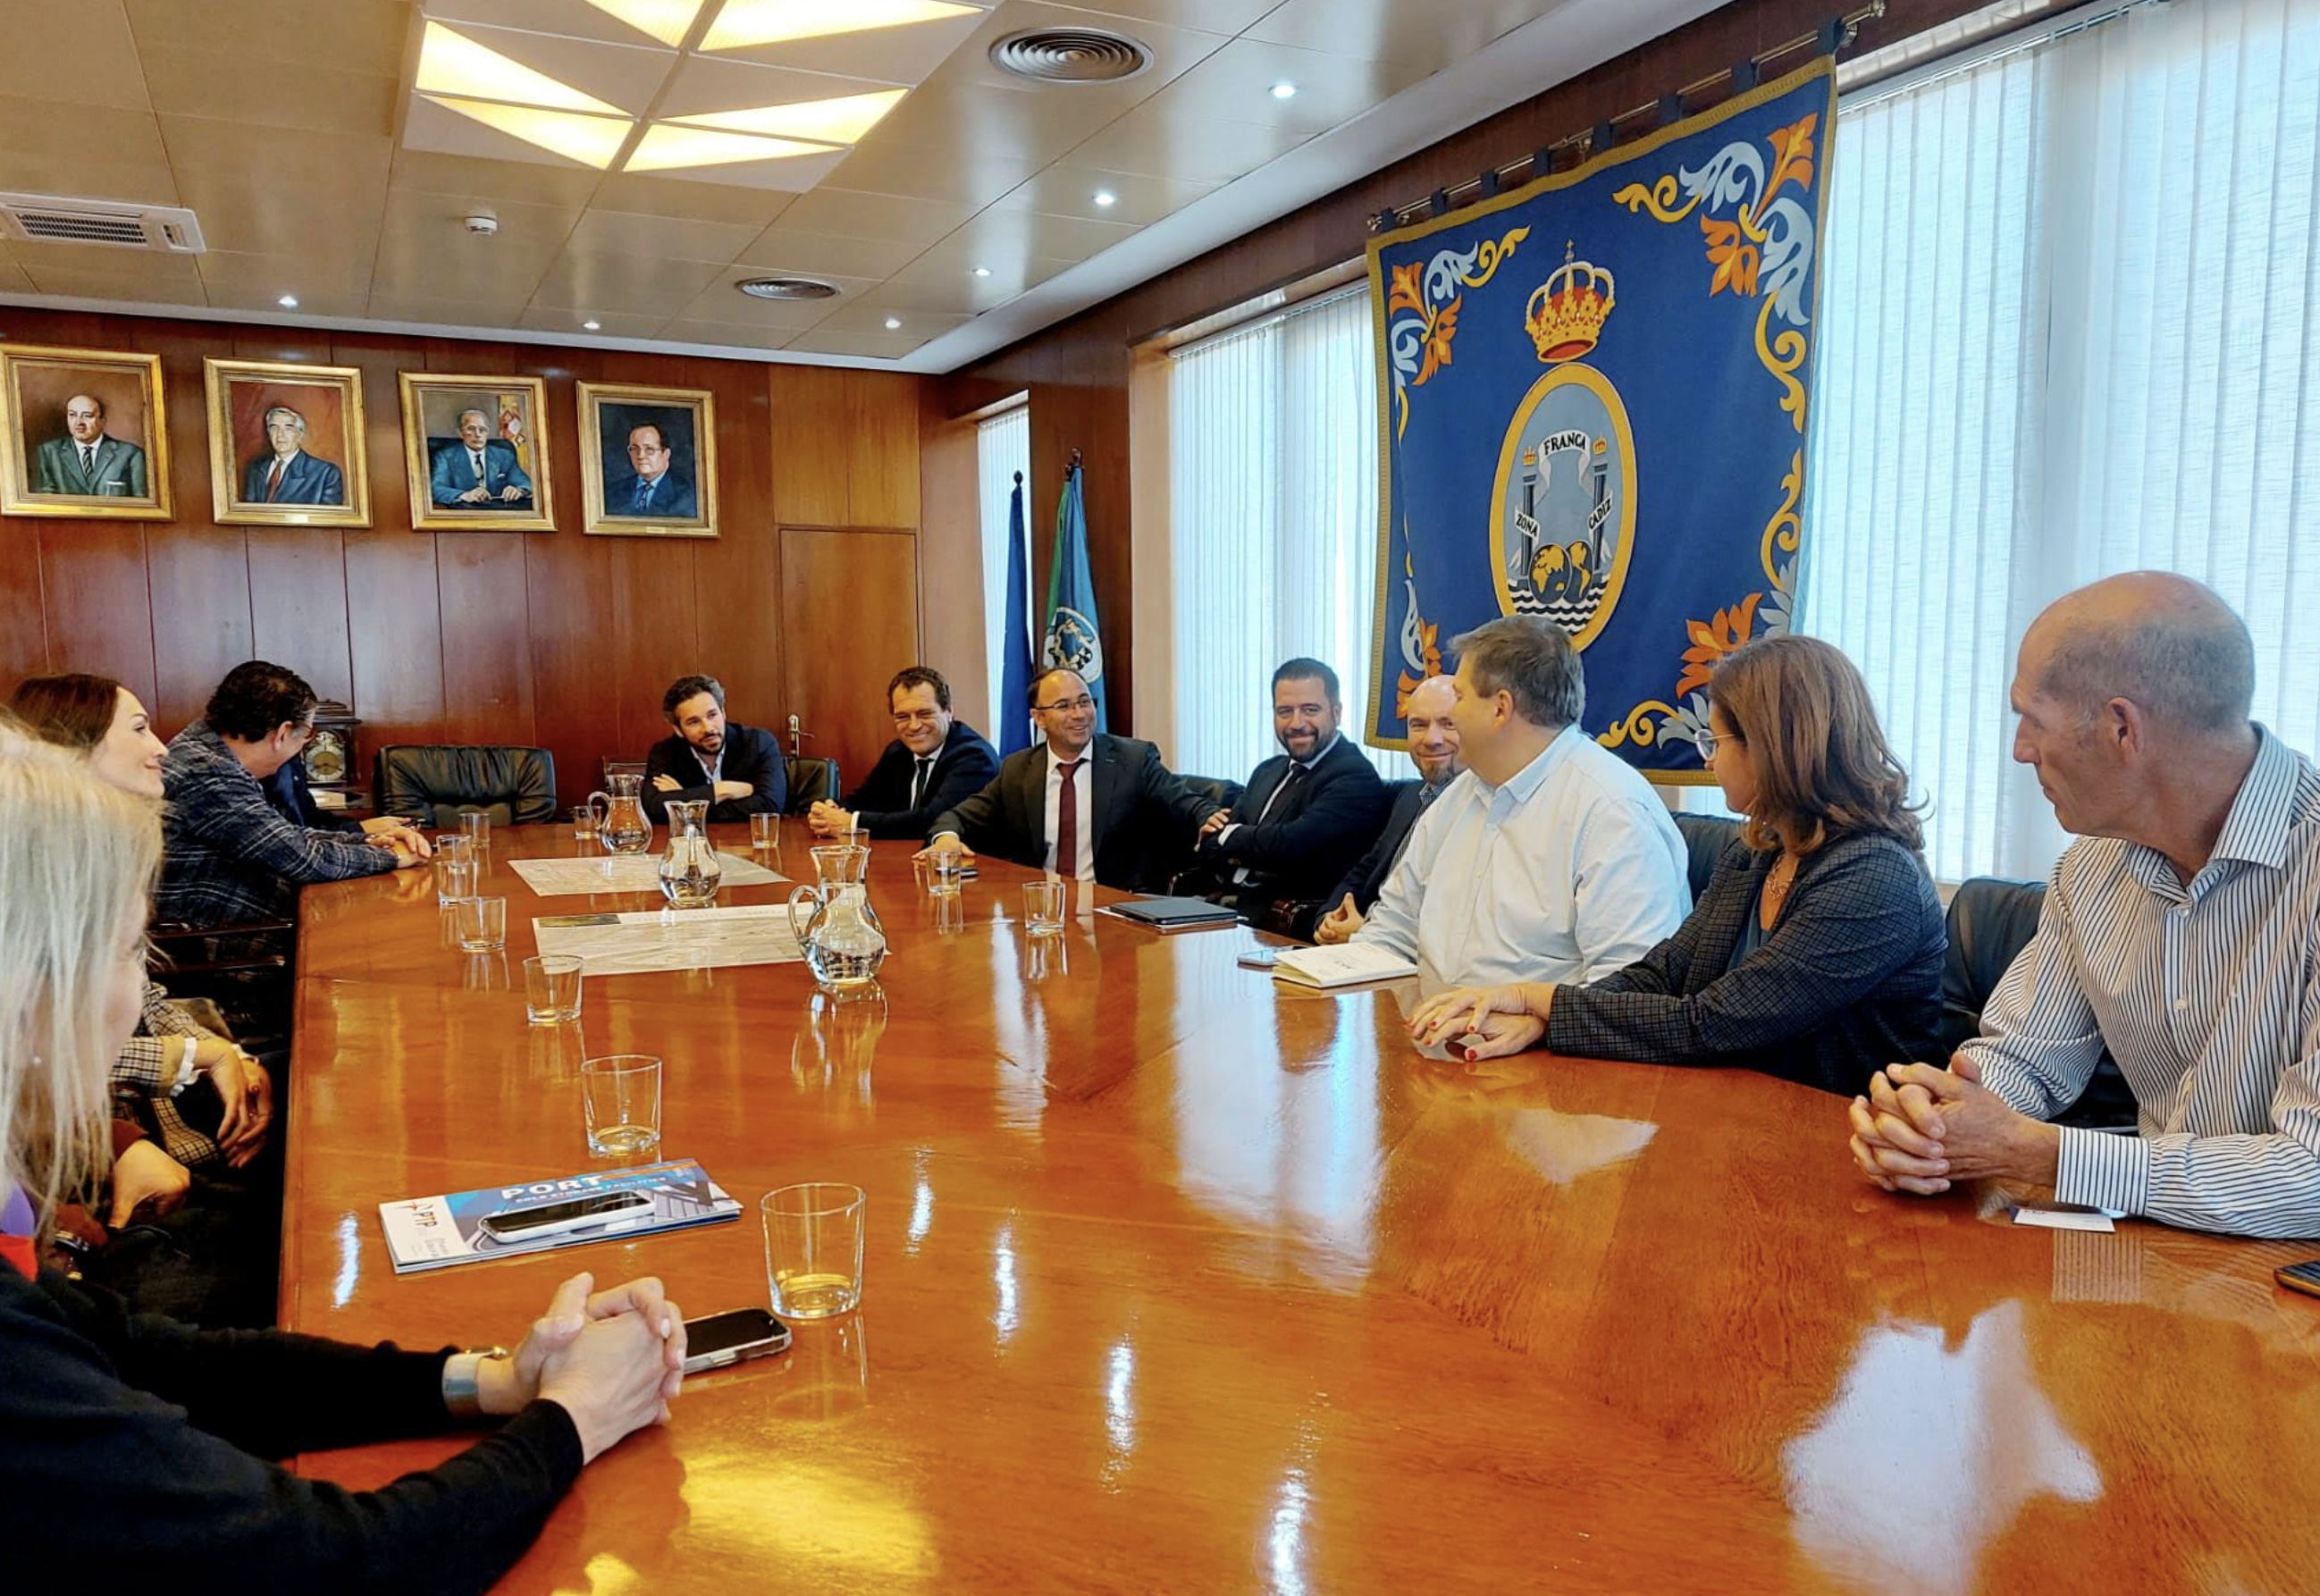 Una delegación de operadores y zonas francas latinoamericanas visita a la Zona Franca de Cádiz.